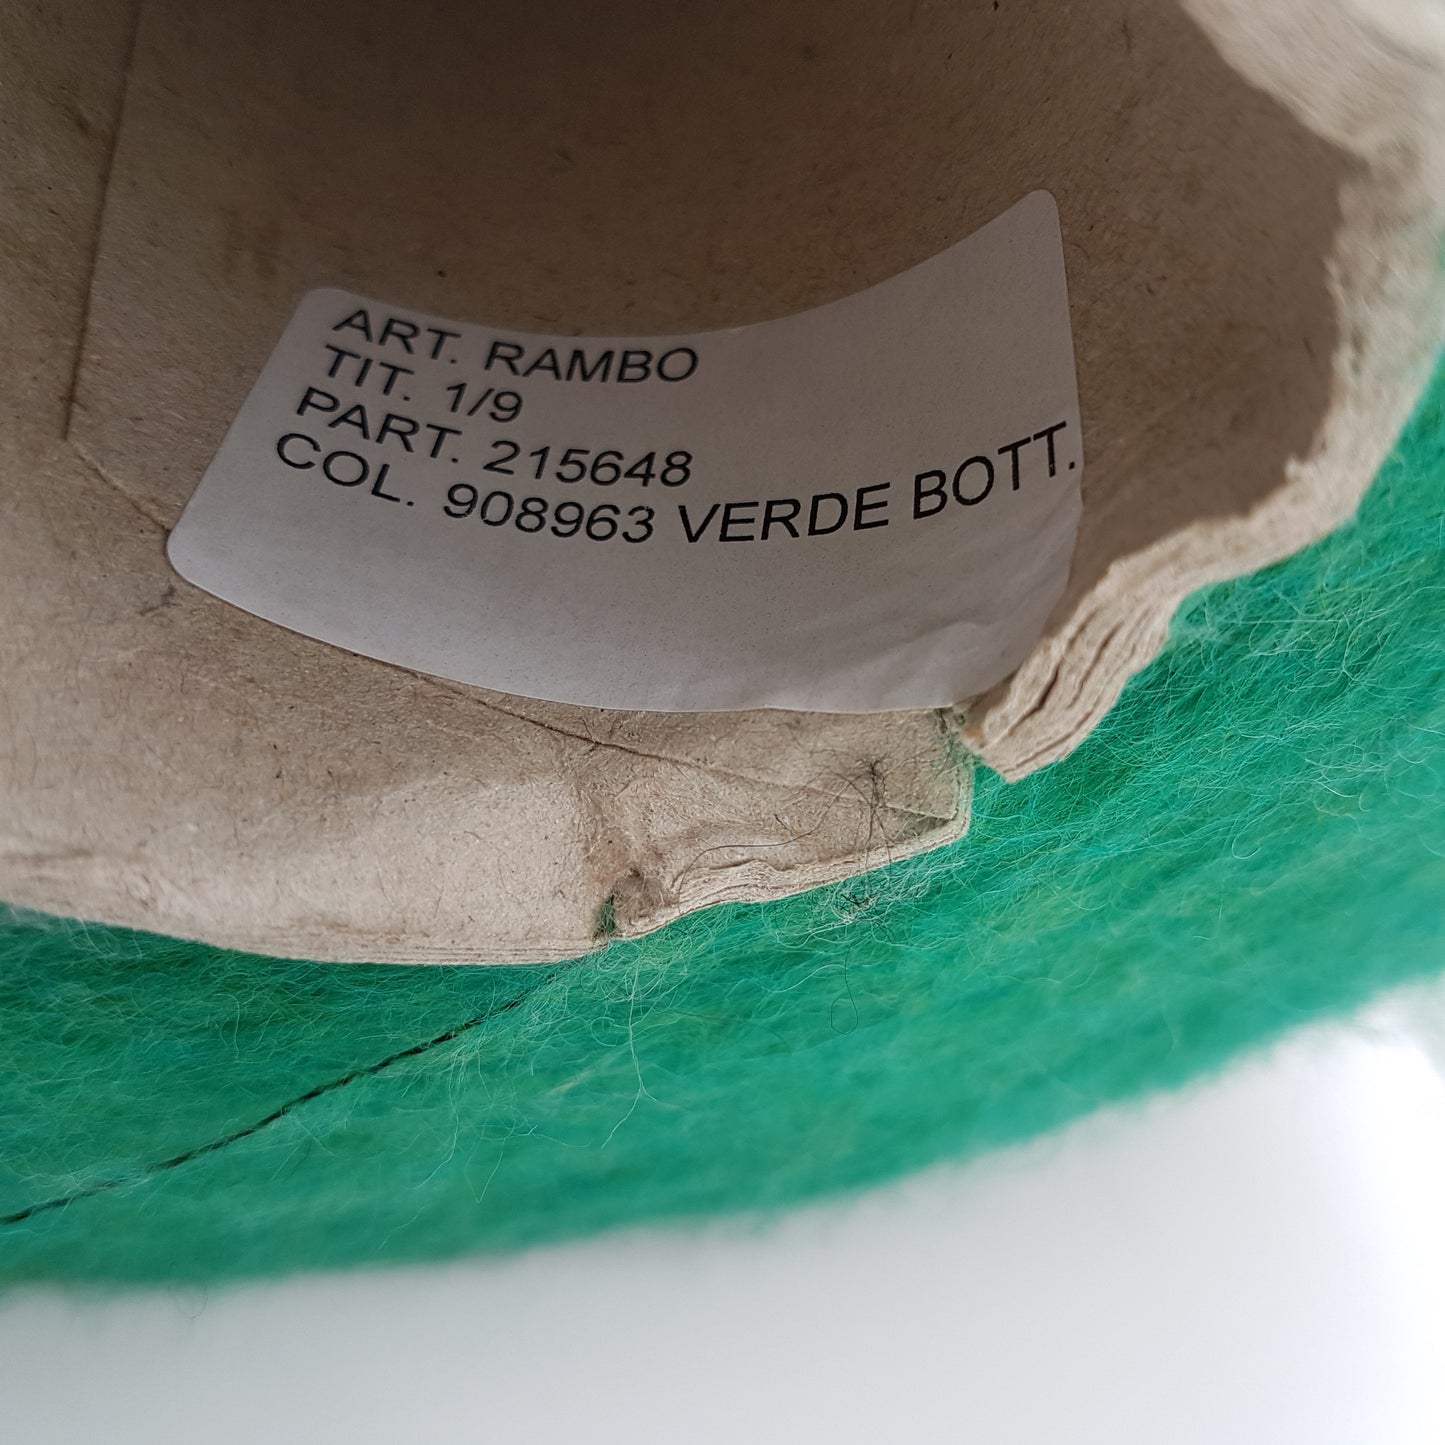 100g Lana Spazzolata filato italiano morbido colore Verde Mélange N.273